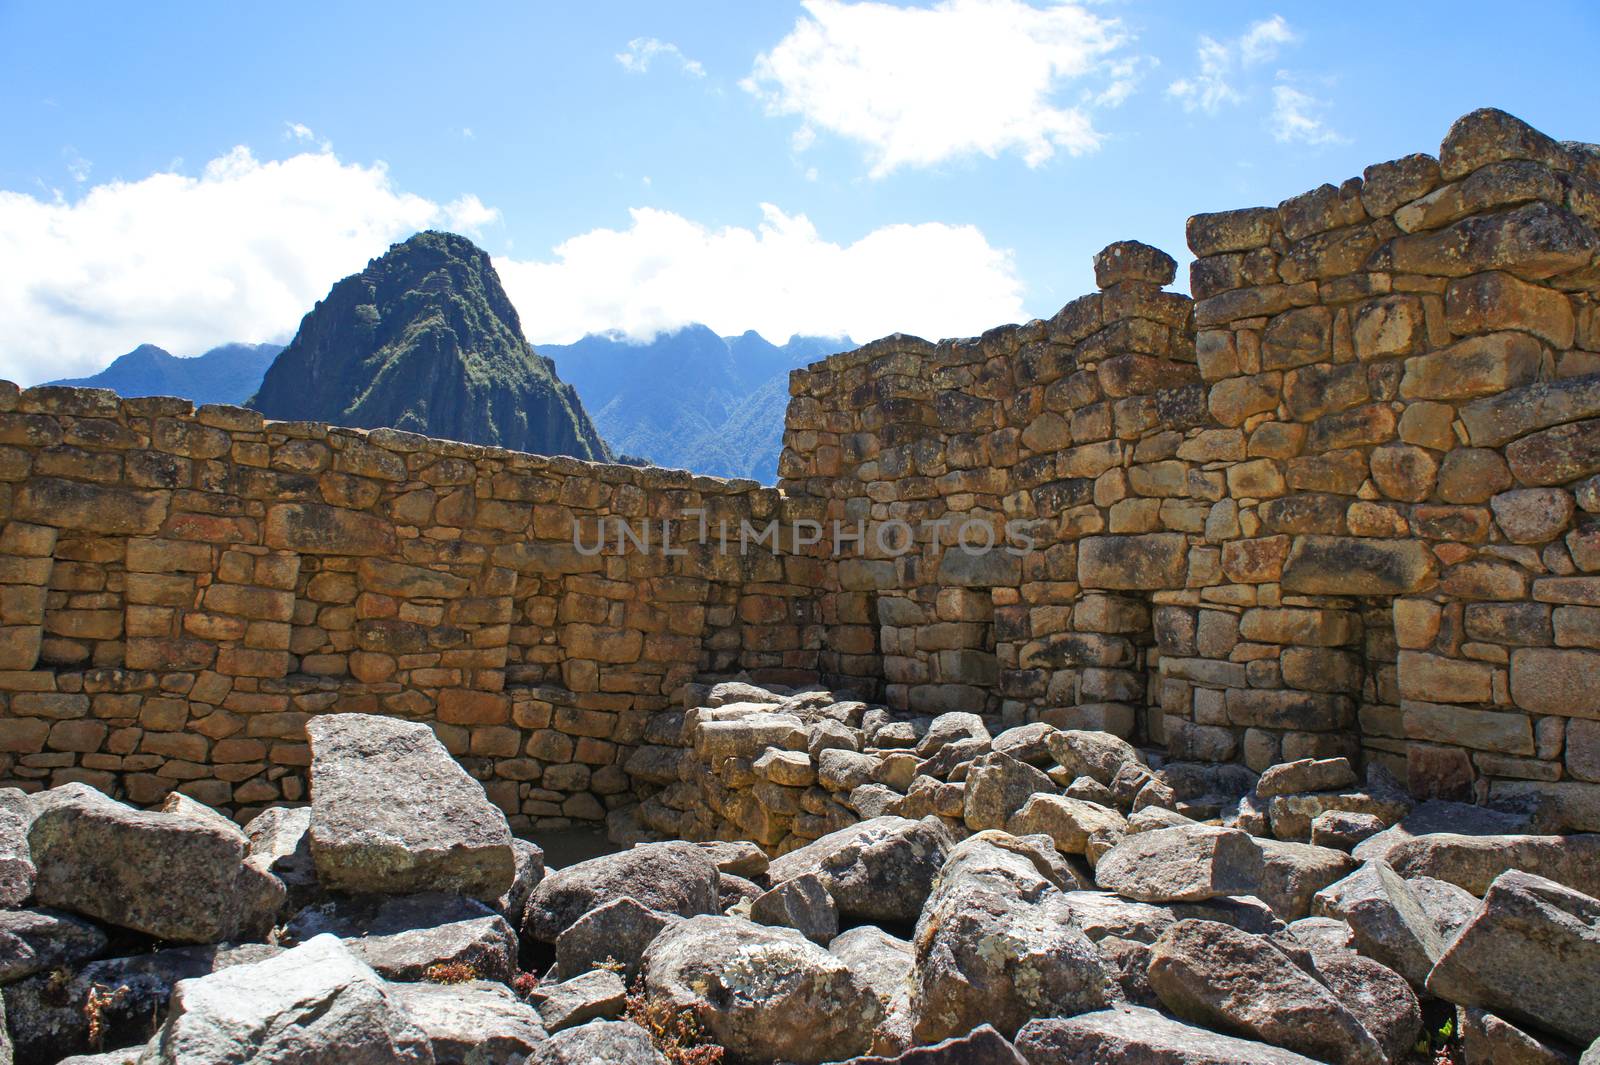 Closeup of the ruins of a building at Machu Picchu, Peru